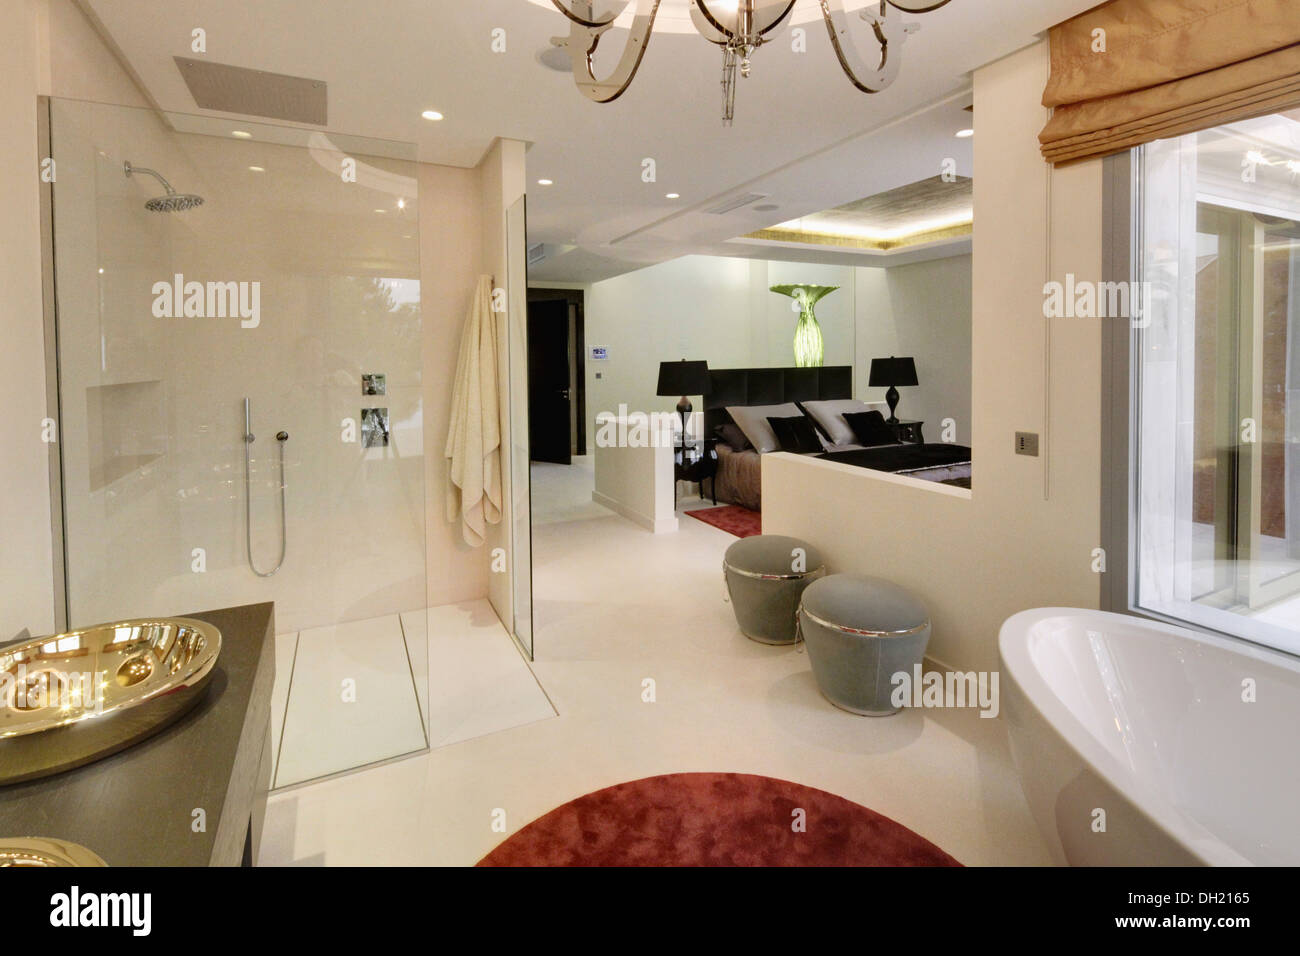 Ducha grande y gris de las heces en el diáfano, baño en-suite en español moderno apartamento dormitorio Foto de stock